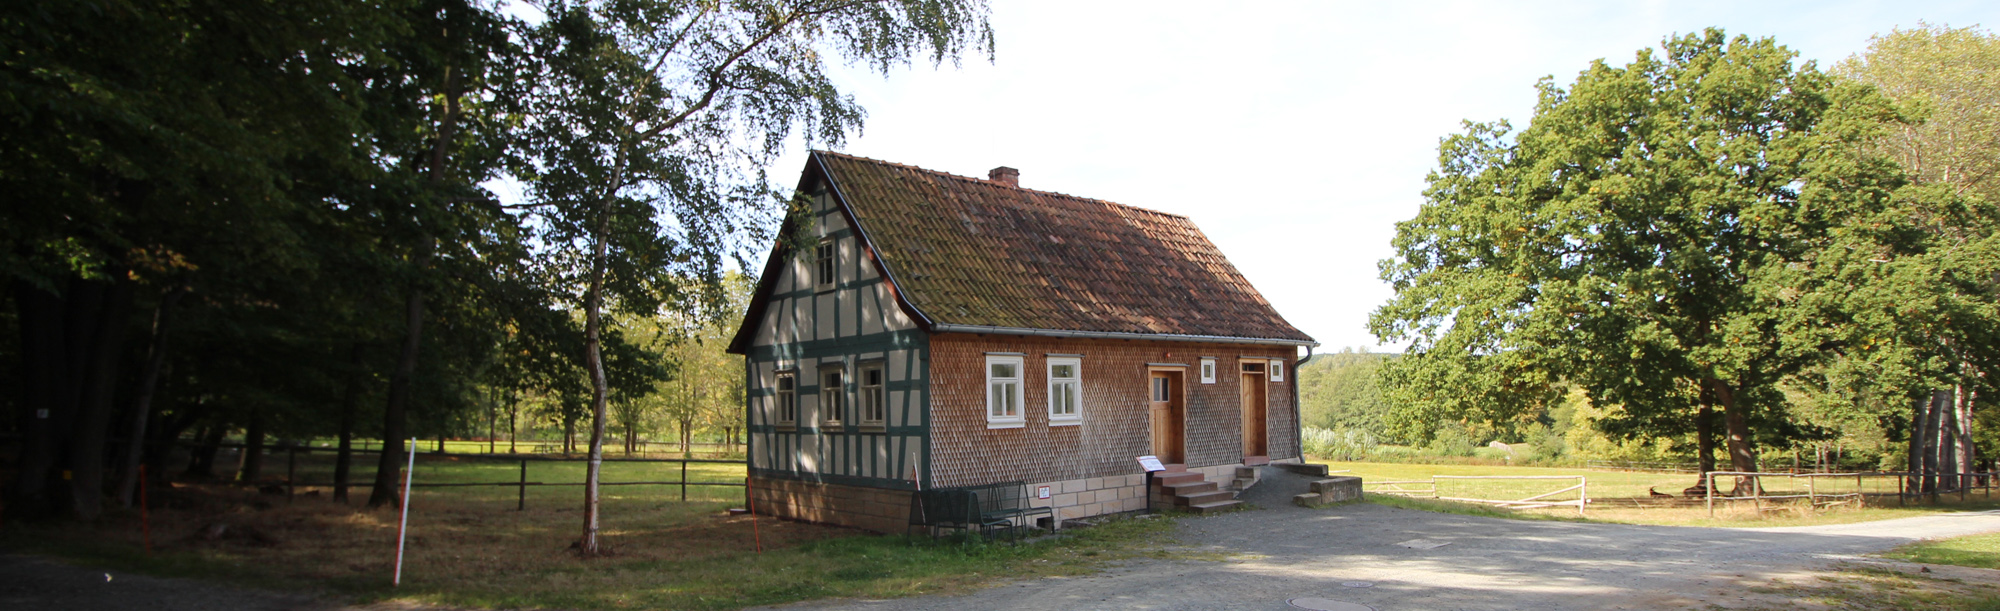 Das Altenteilerhaus aus Sieblos steht in der Baugruppe Osthessen. Die linke Seite ist eine Fachwerk-Fassade. An die Vorderseite wurden Holzschindeln angebracht.